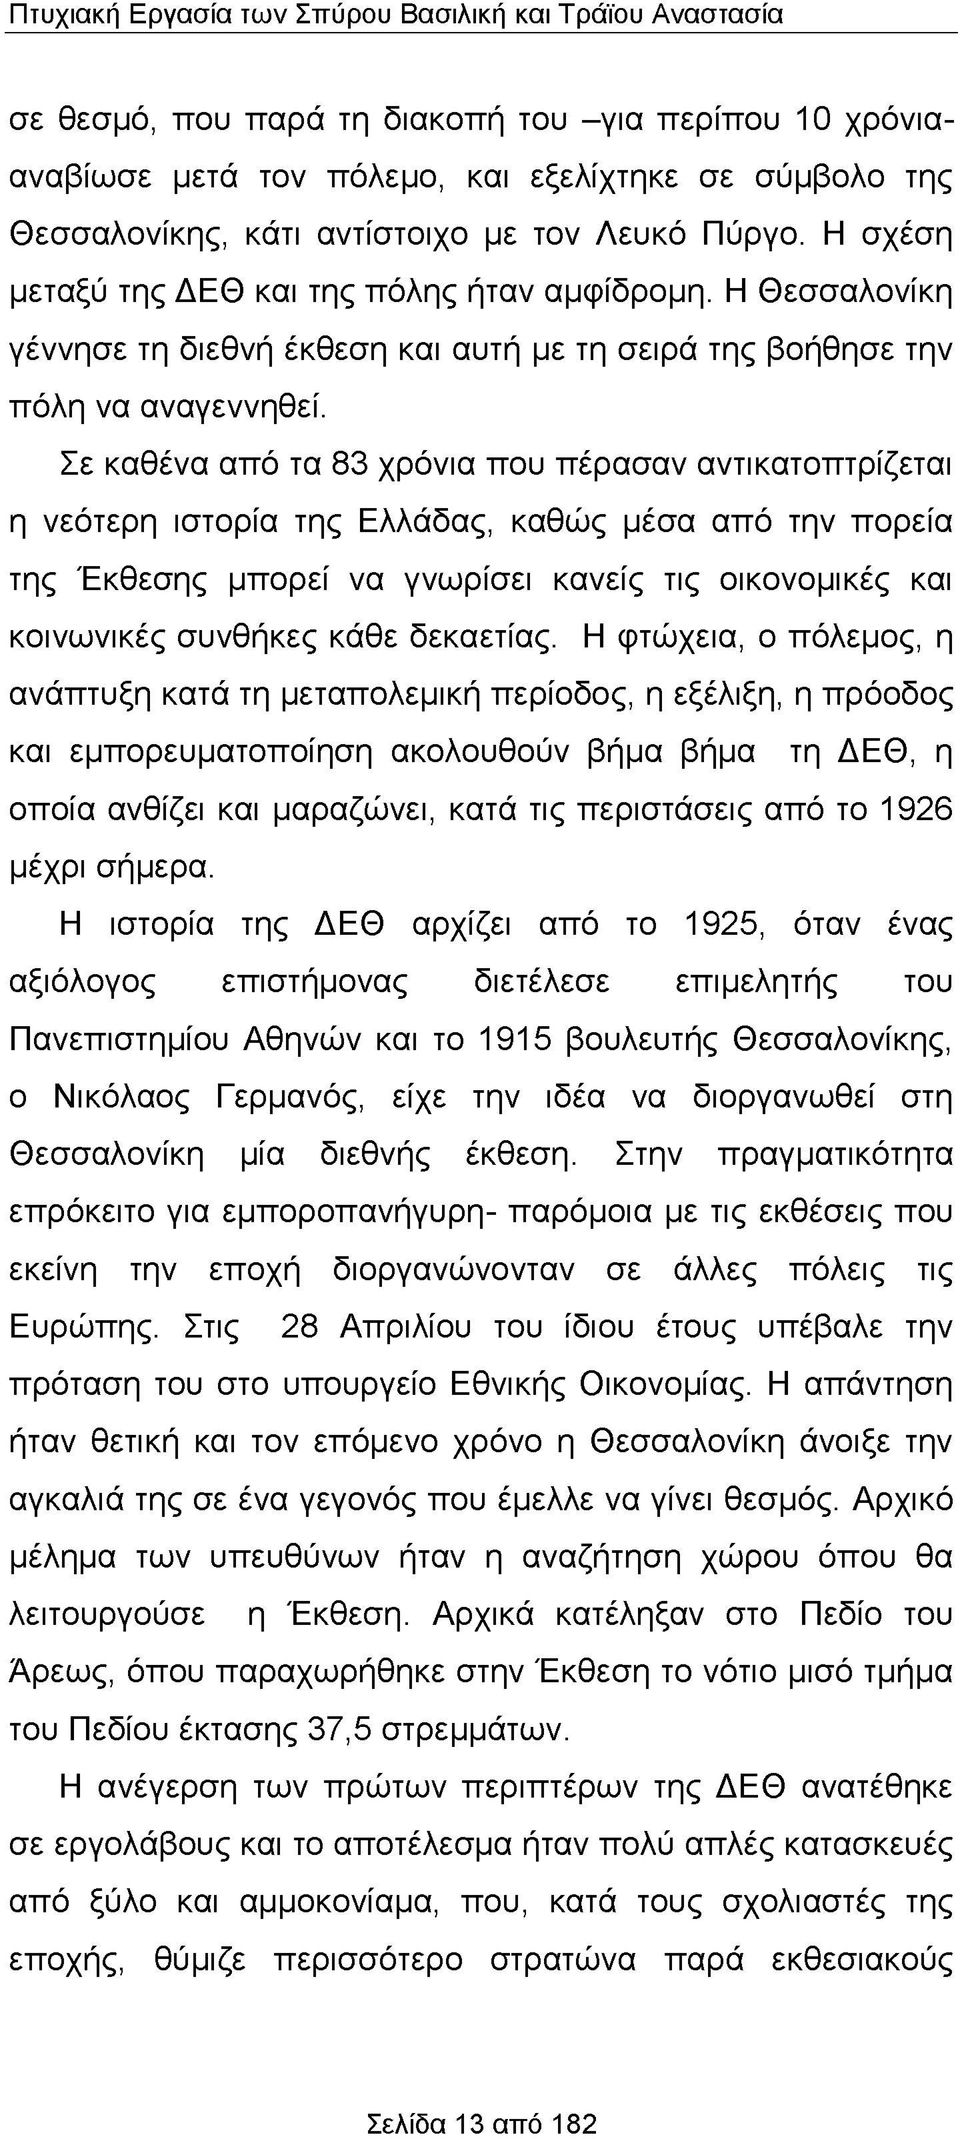 Σε καθένα από τα 83 χρόνια που πέρασαν αντικατοπτρίζεται η νεότερη ιστορία της Ελλάδας, καθώς μέσα από την πορεία της Έκθεσης μπορεί να γνωρίσει κανείς τις οικονομικές και κοινωνικές συνθήκες κάθε